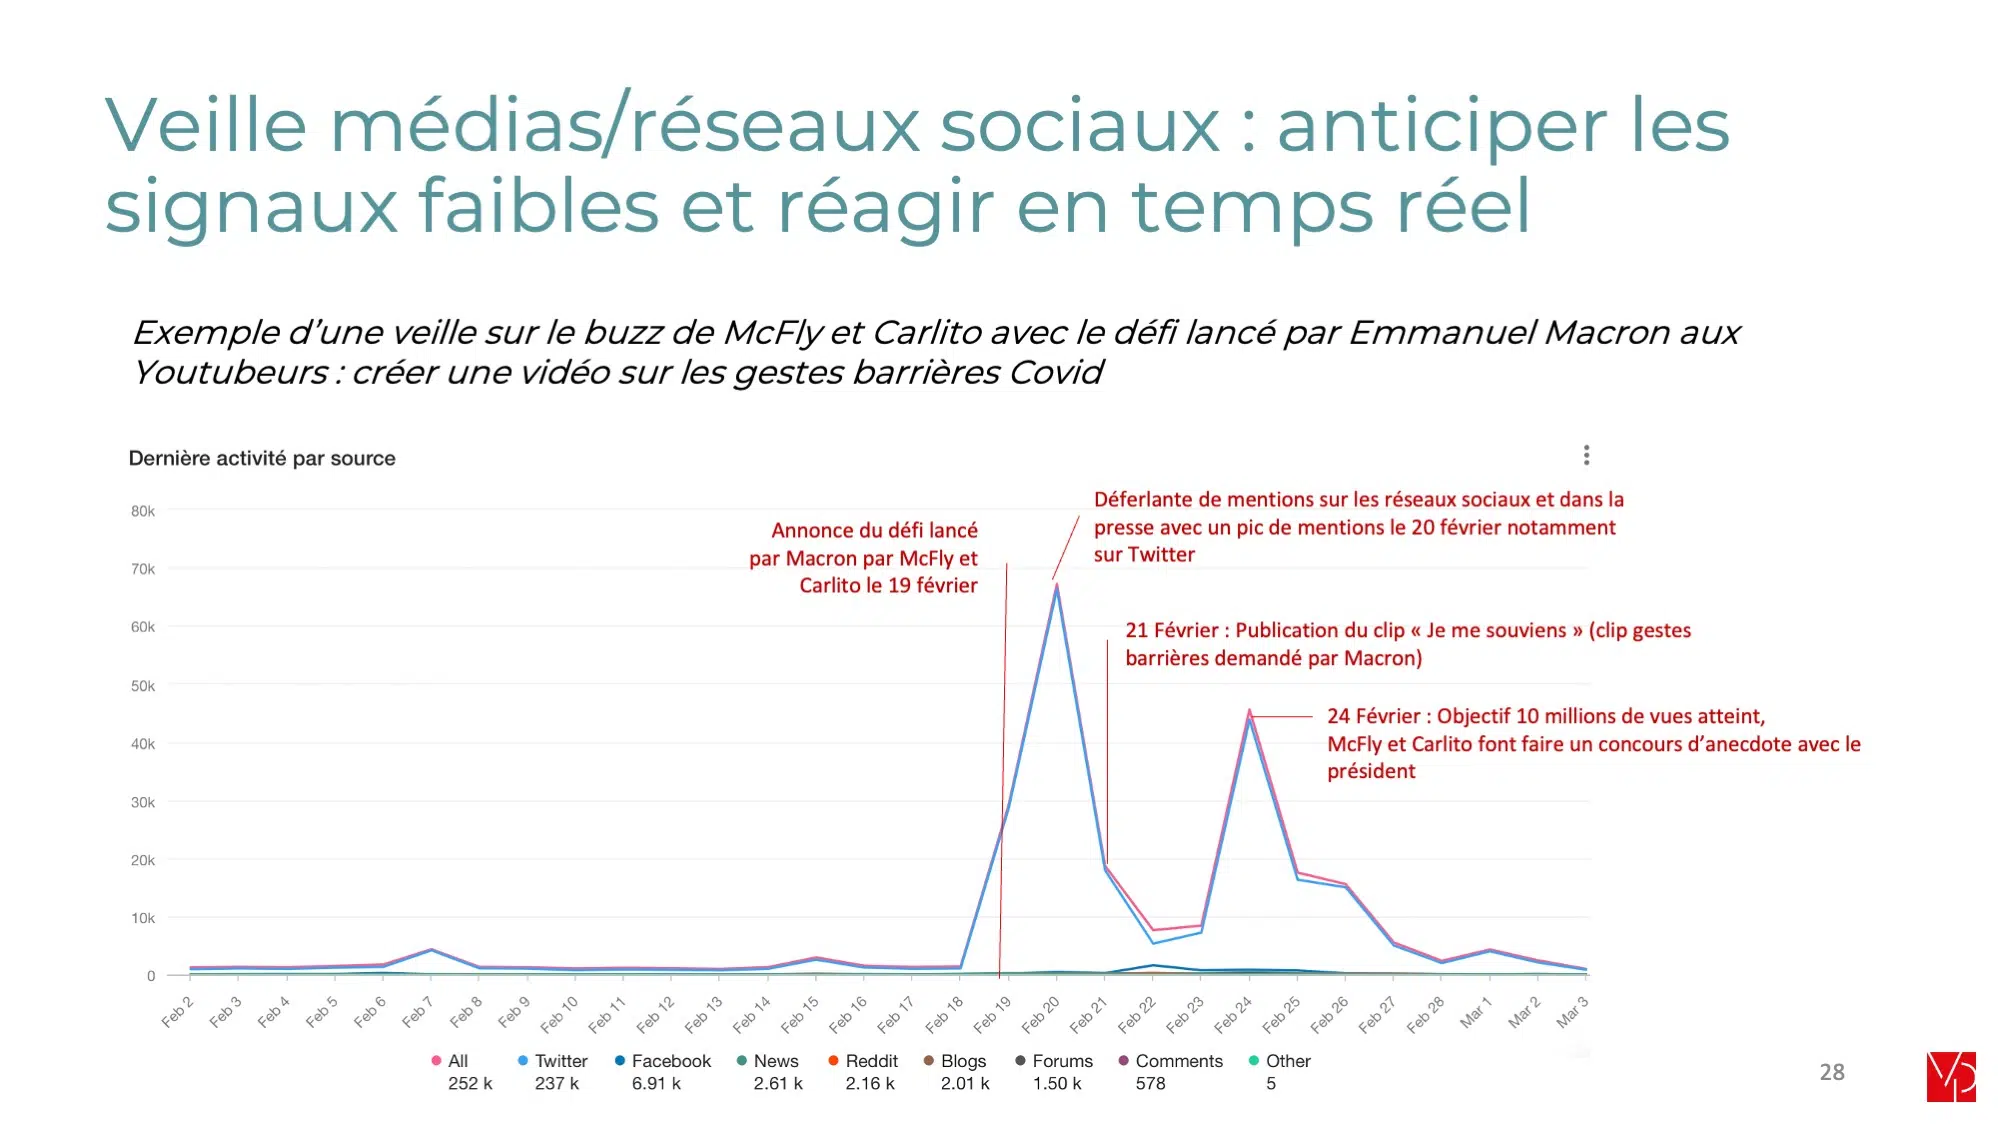 Veille presse et médias sociaux - Analyse des mentions - agence de communication coporate et de crise VP STRAT Paris digital